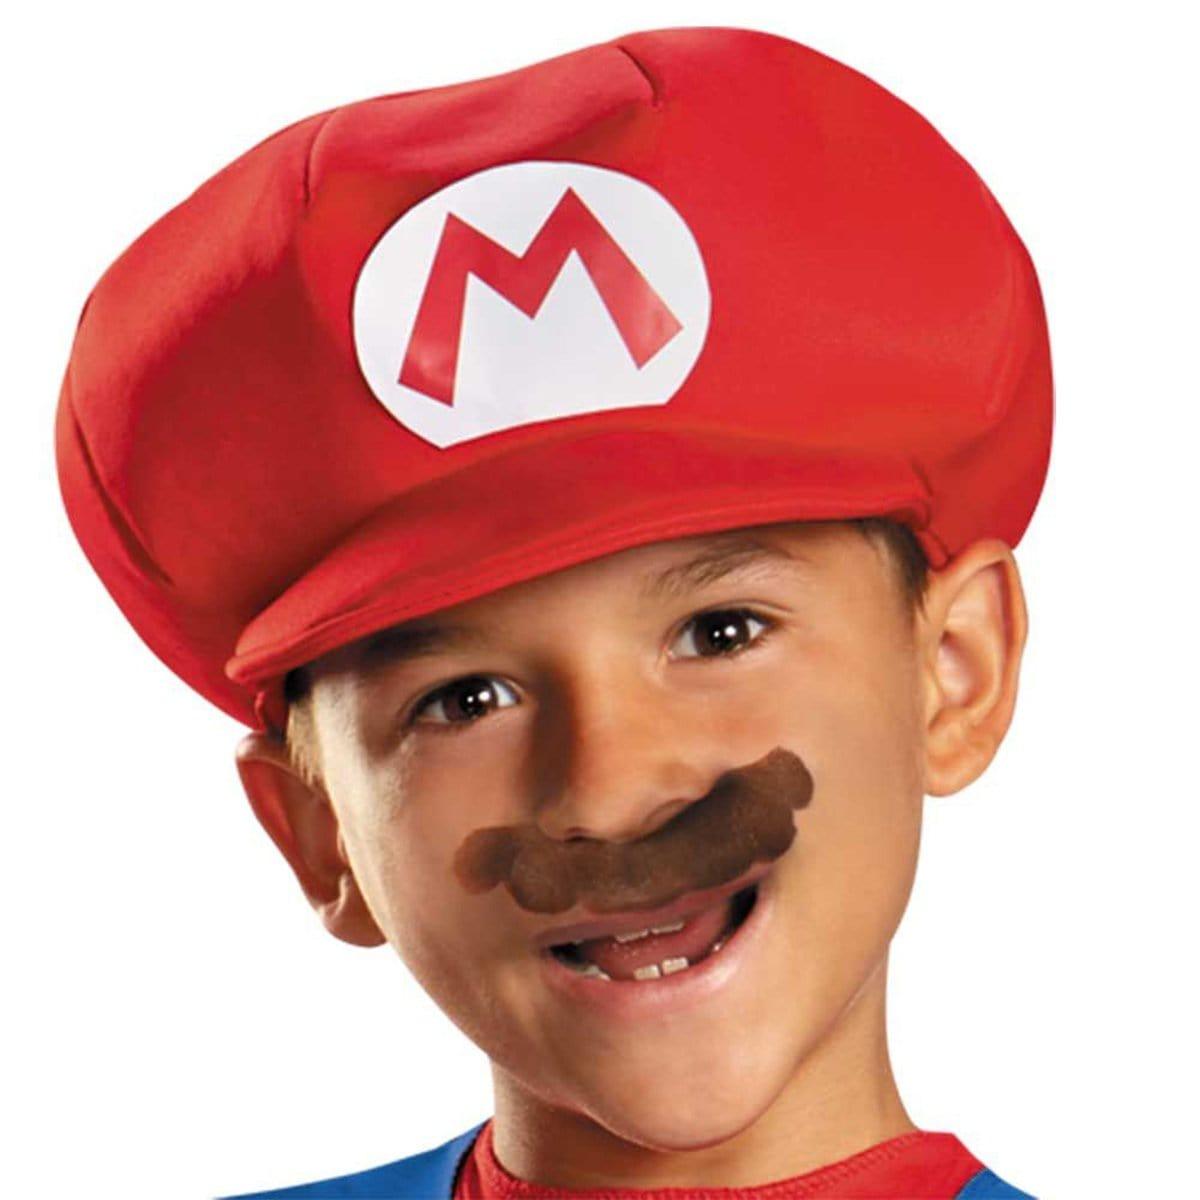 Costume de Mario pour enfants, Super Mario Bros.